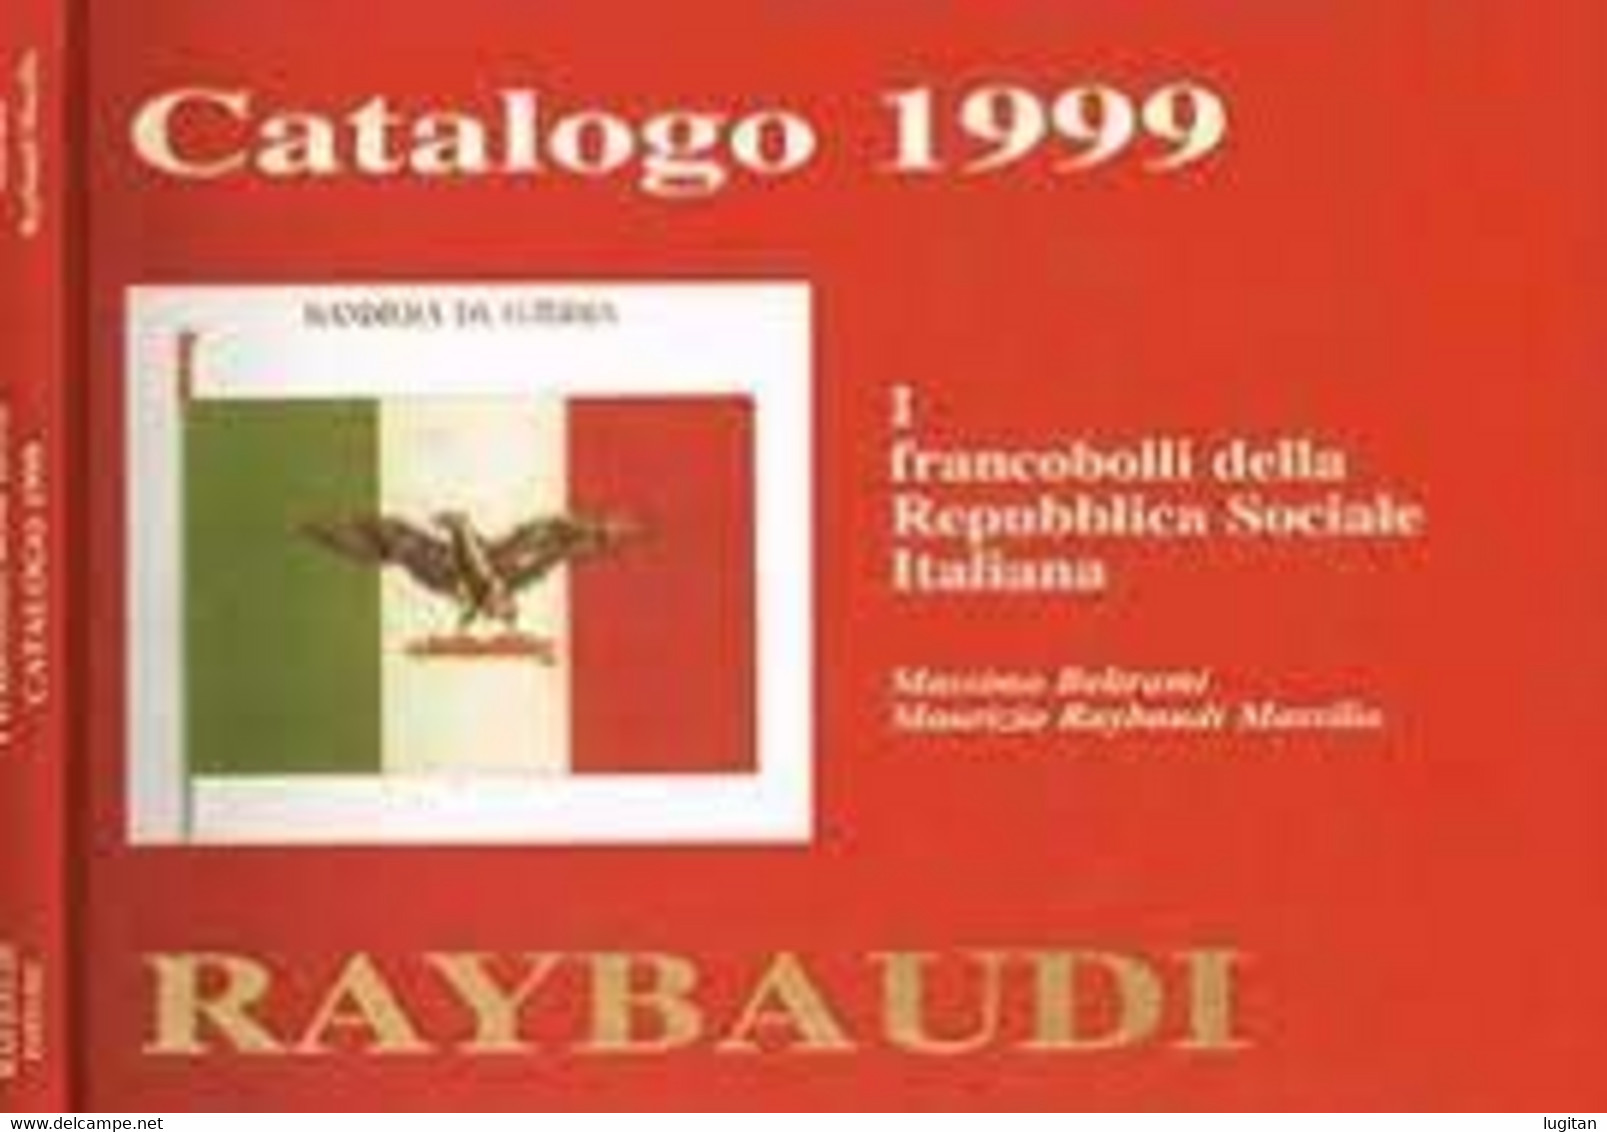 CATALOGO 1999 - I FRANCOBOLLI DELLE REPUBBLICA SOCIALE - RAYBAUDI - Guerra 1939-45